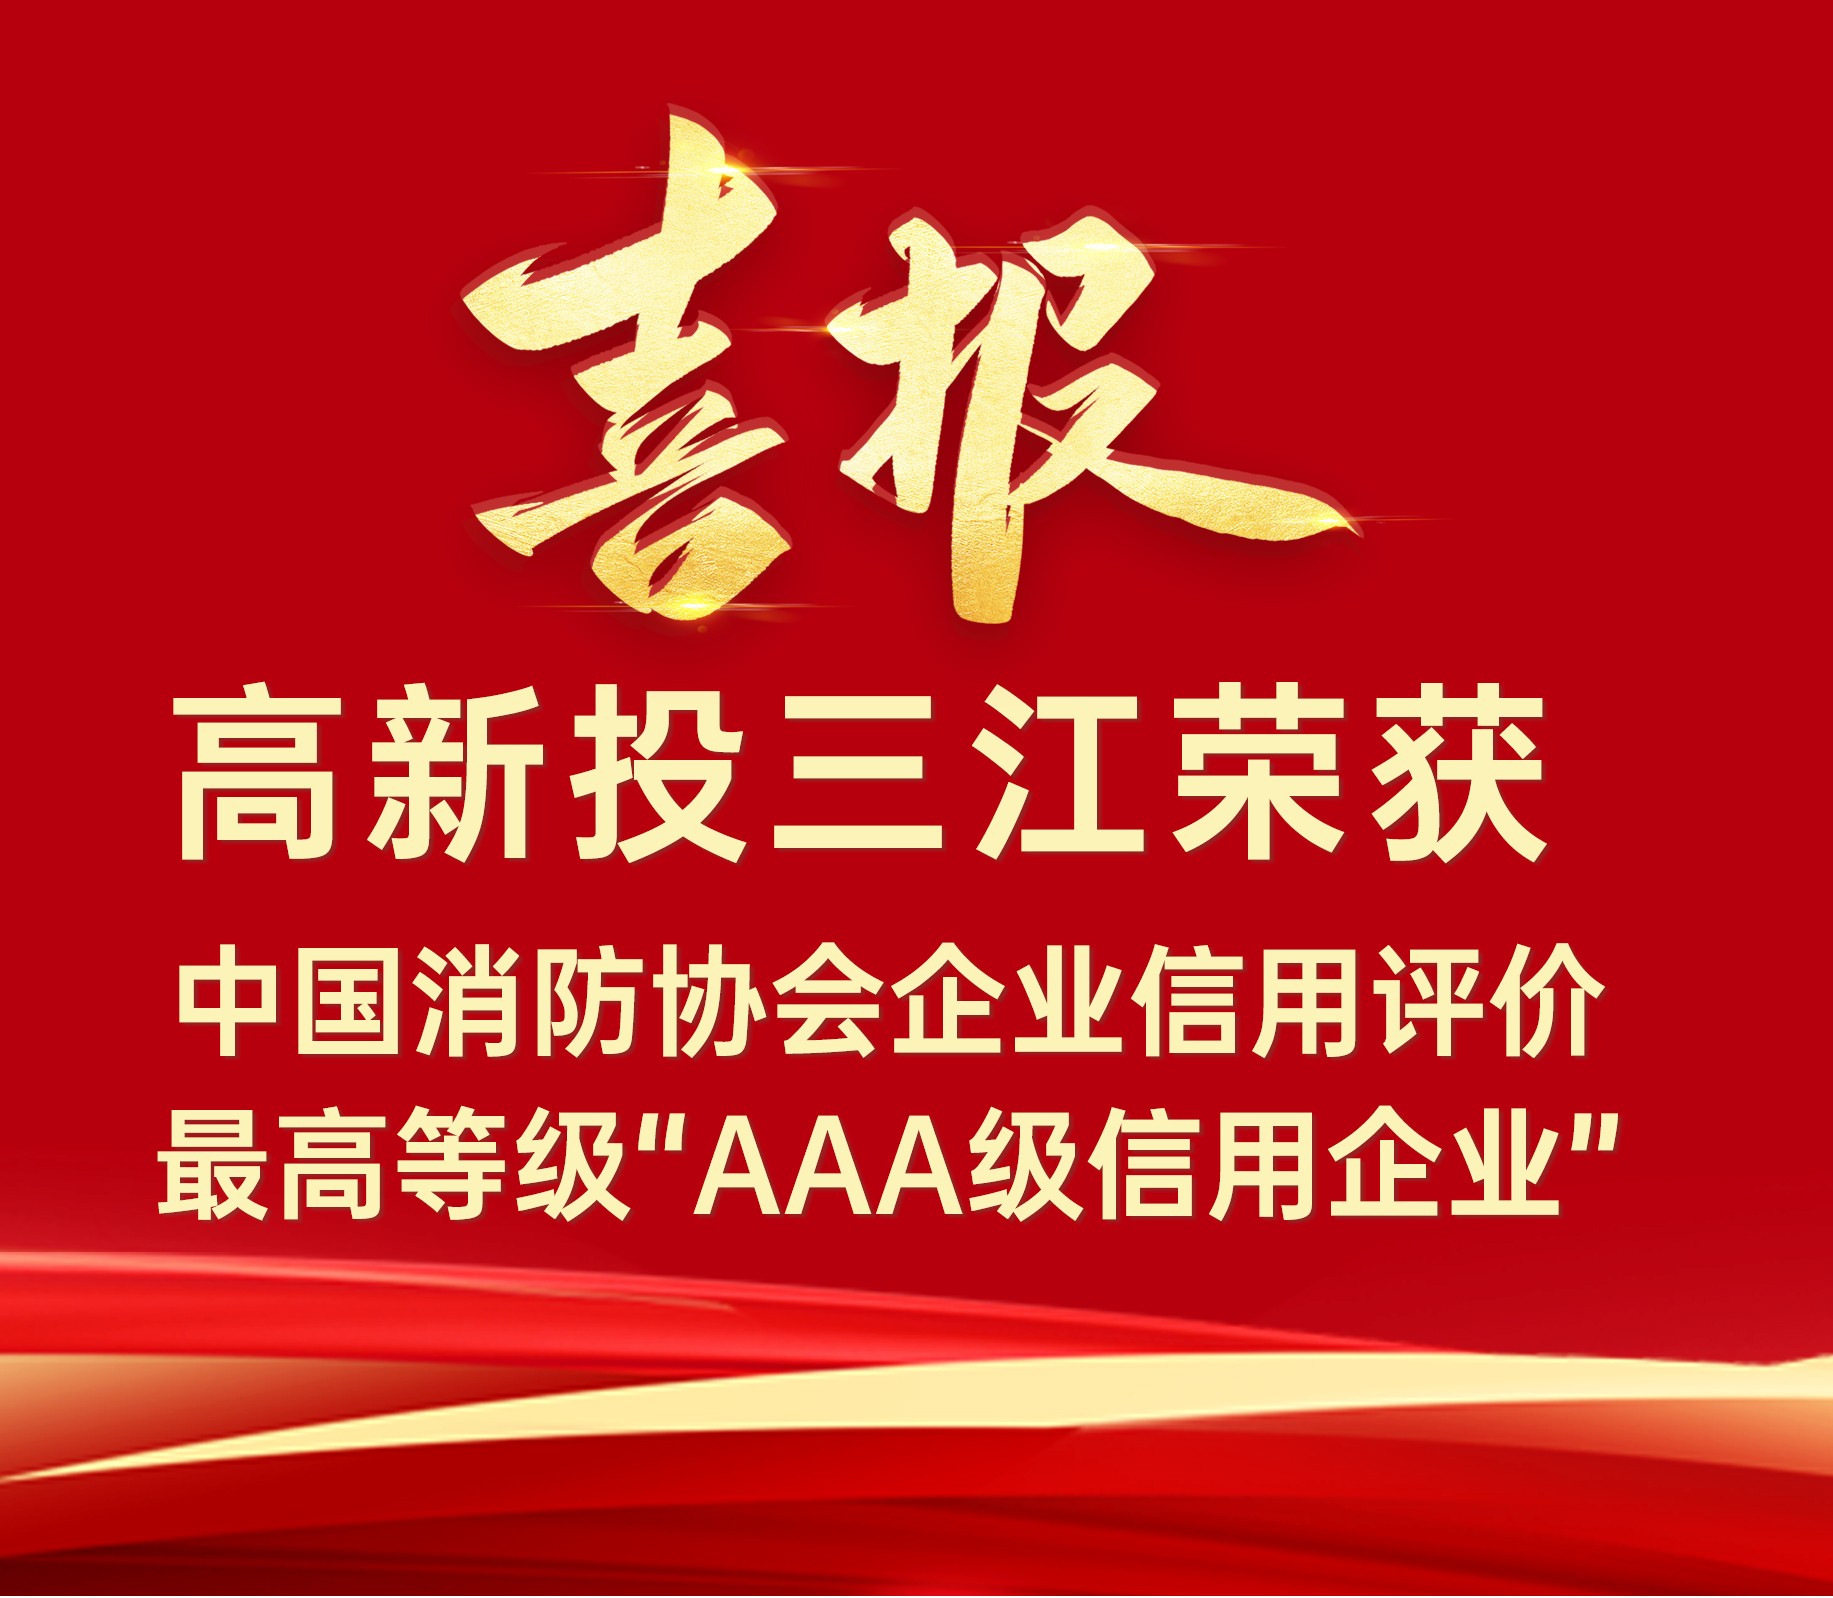 香港118彩色印刷图区连续荣获中国消防协会企业信用评价最高等级“AAA级信用企业”